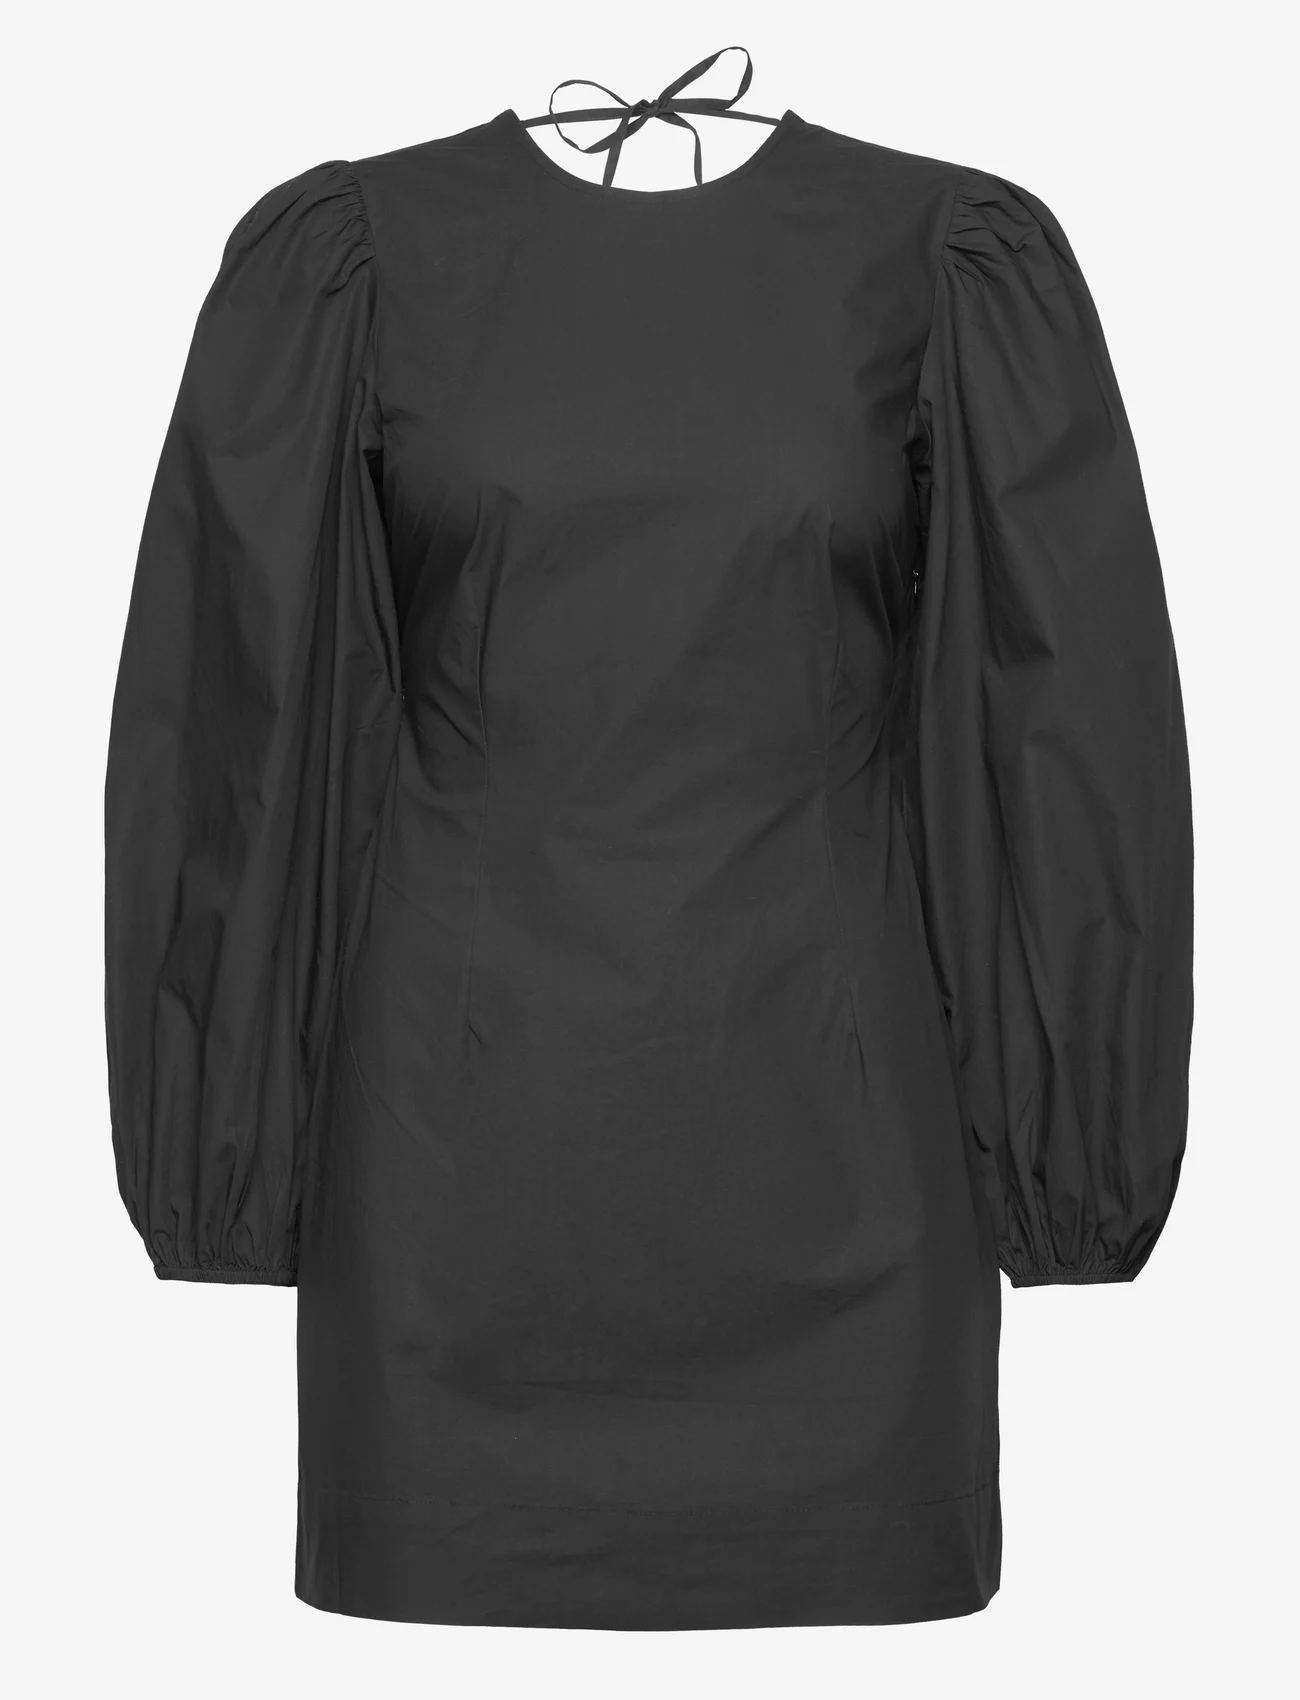 Ganni - Cotton Poplin Open Back Mini Dress - festklær til outlet-priser - black - 0